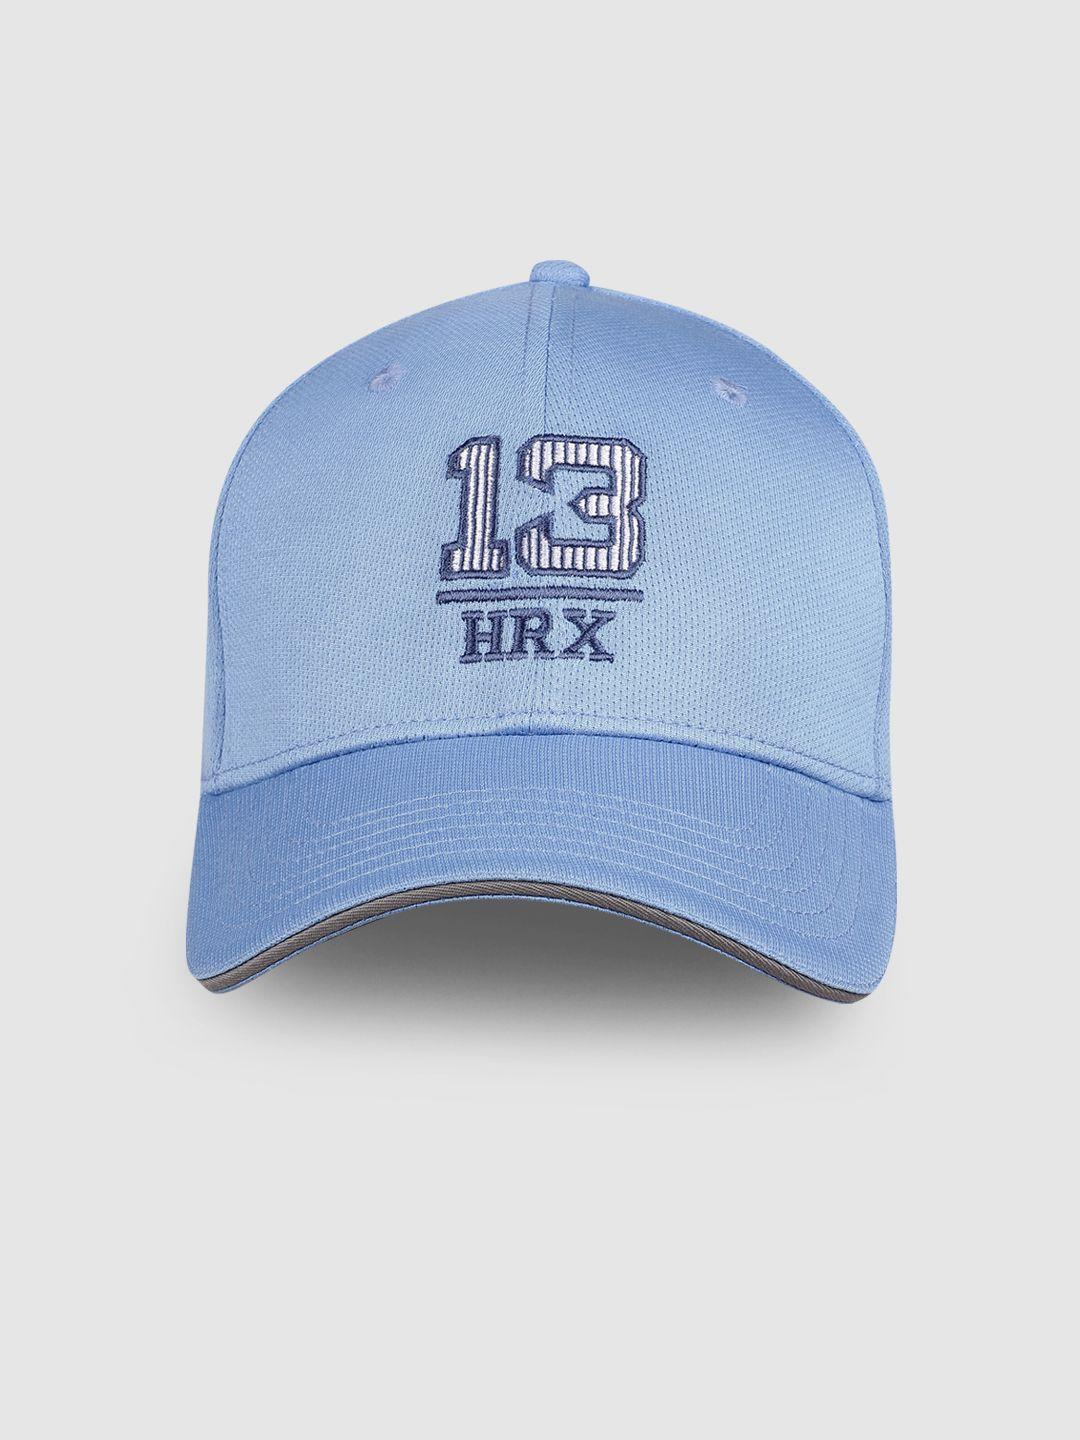 hrx-by-hrithik-roshan-unisex-light-blue-embroidered-baseball-cap